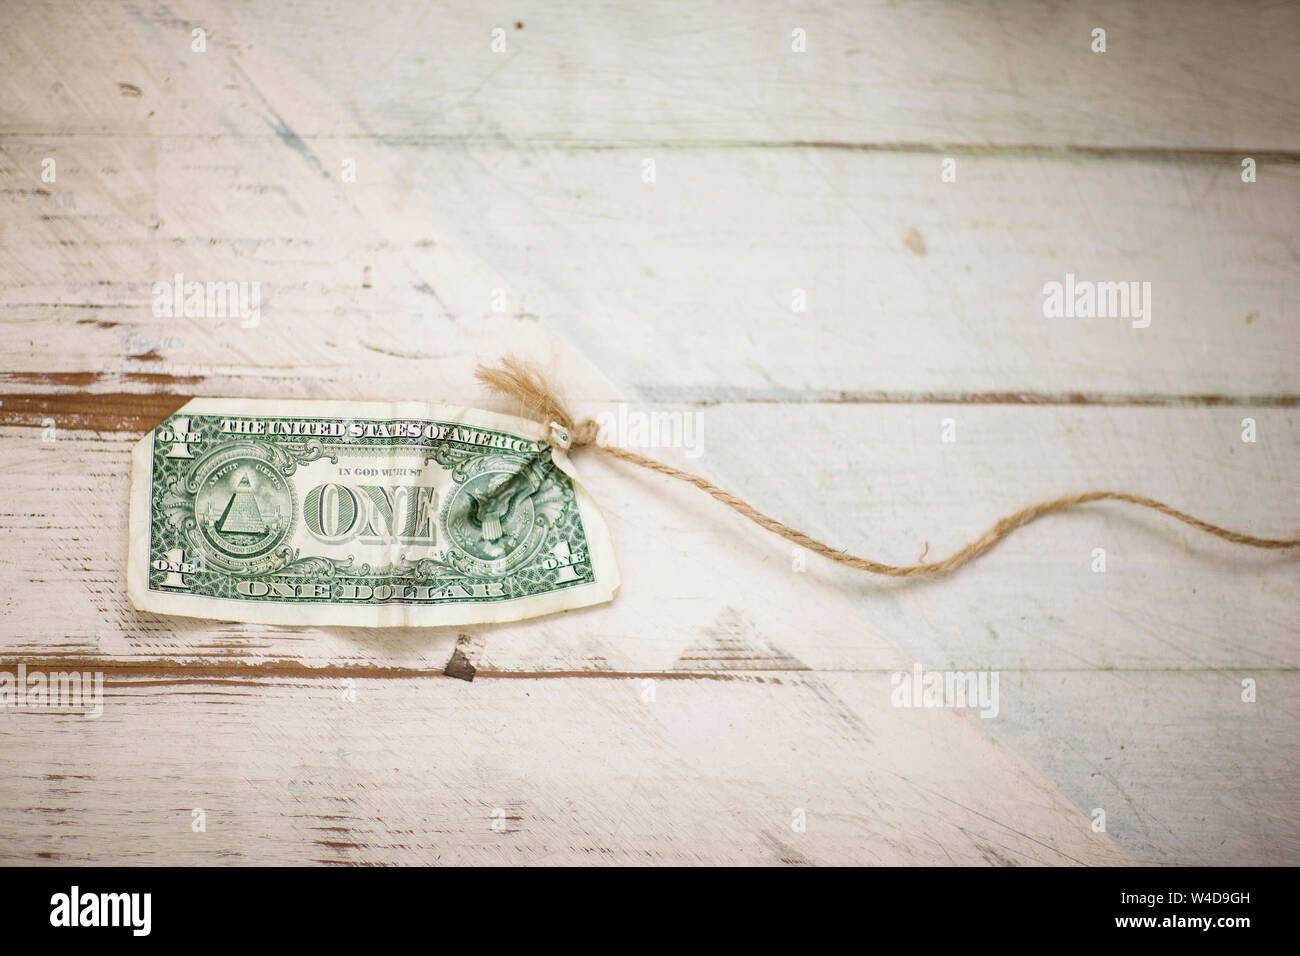 Dólar americano Bill atado al extremo de un trozo de cuerda. Foto de stock